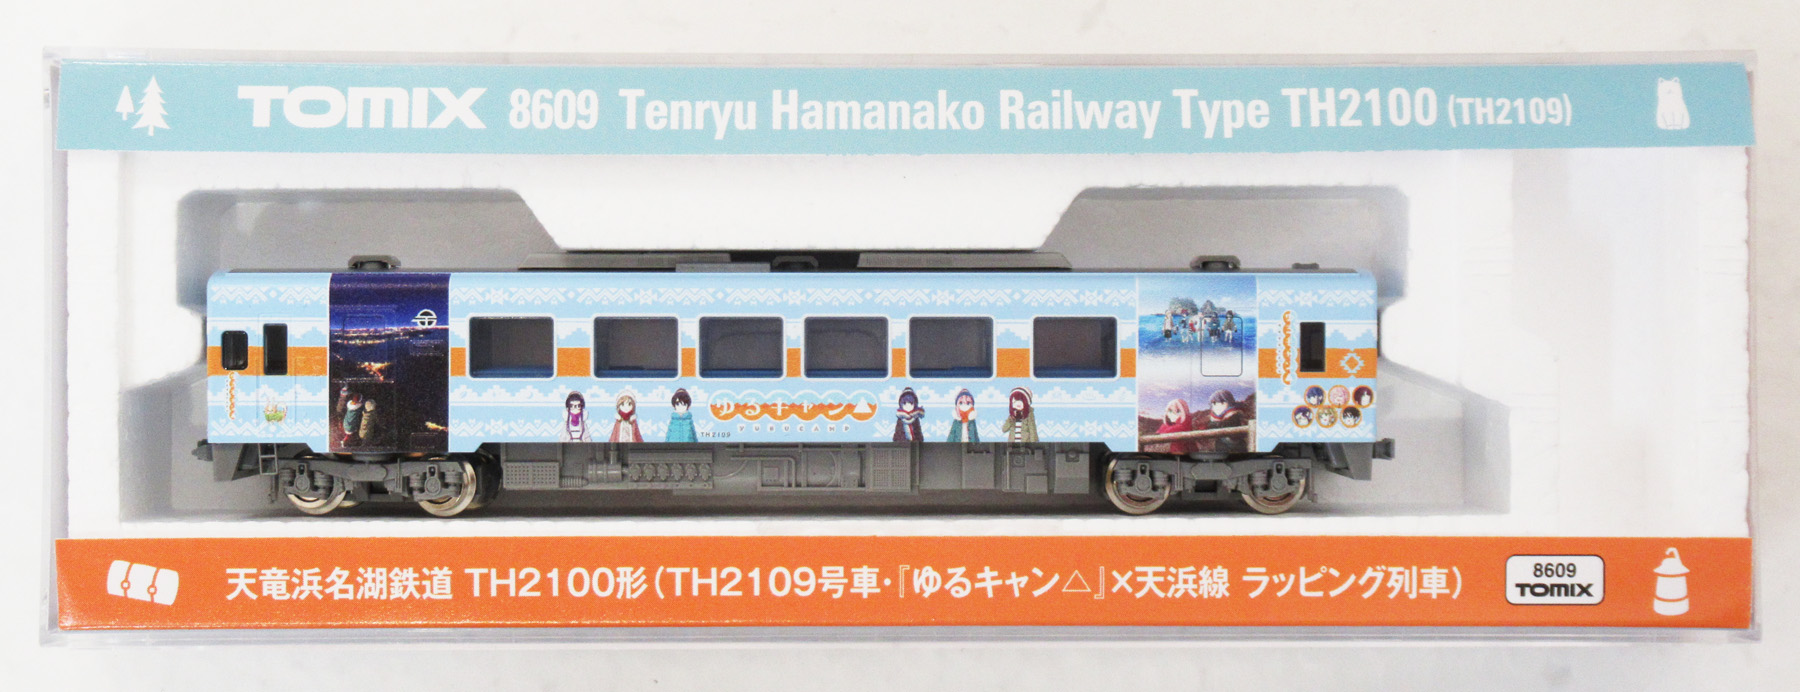 公式]鉄道模型(8609天竜浜名湖鉄道 TH2100形(TH2109号車・『ゆるキャン